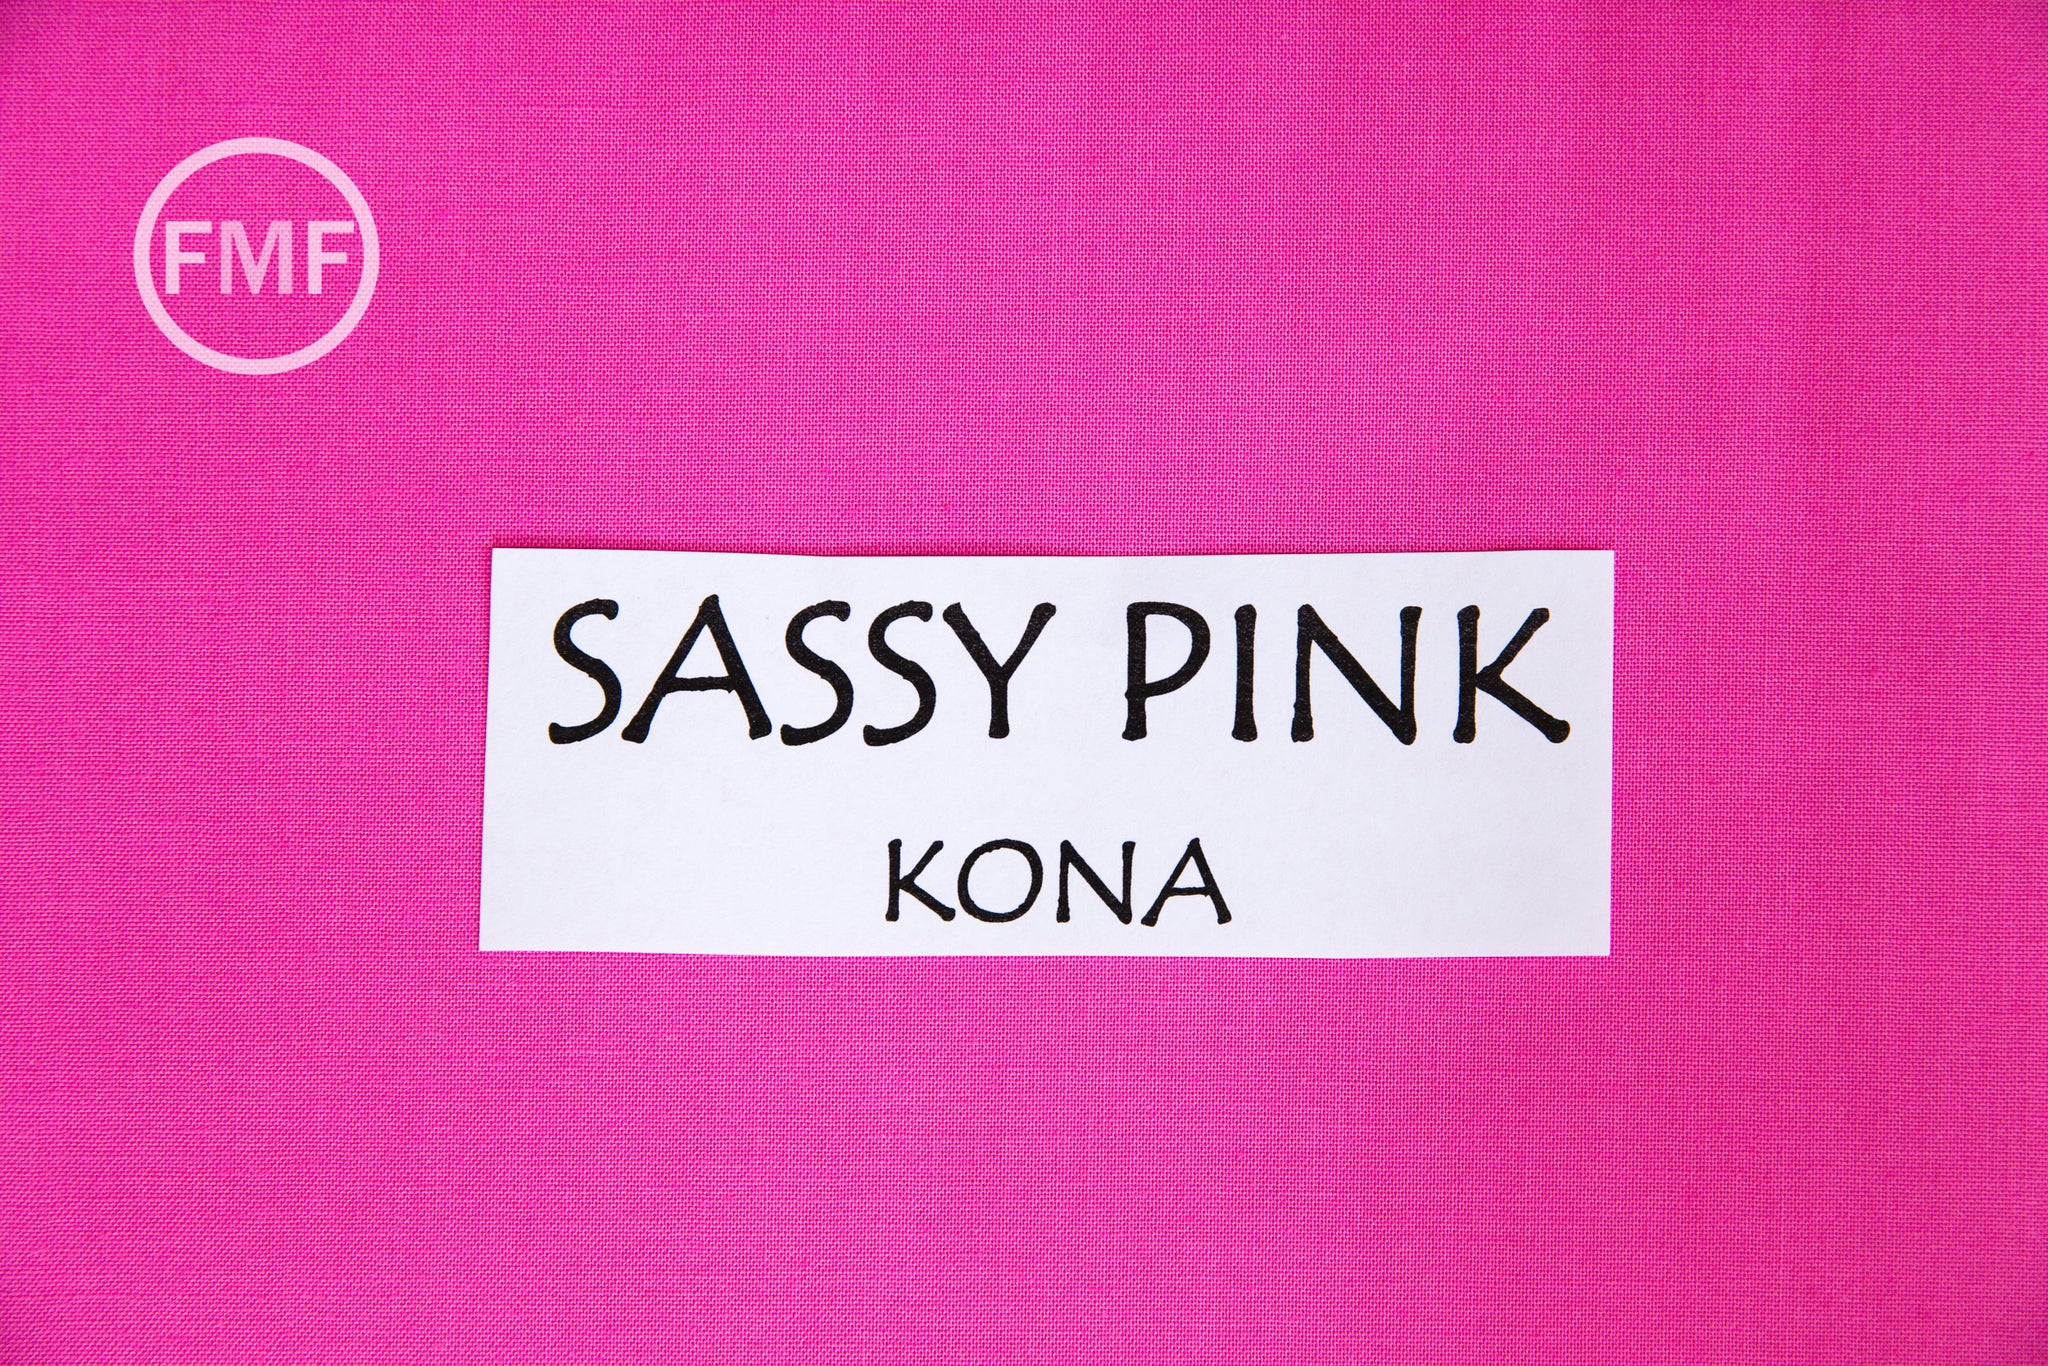 Kona Cotton Candy Pink